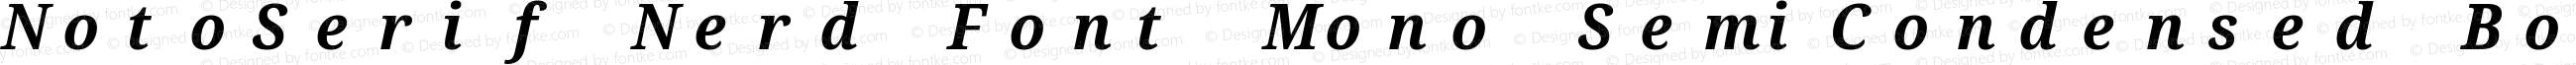 Noto Serif SemiCondensed Bold Italic Nerd Font Complete Mono